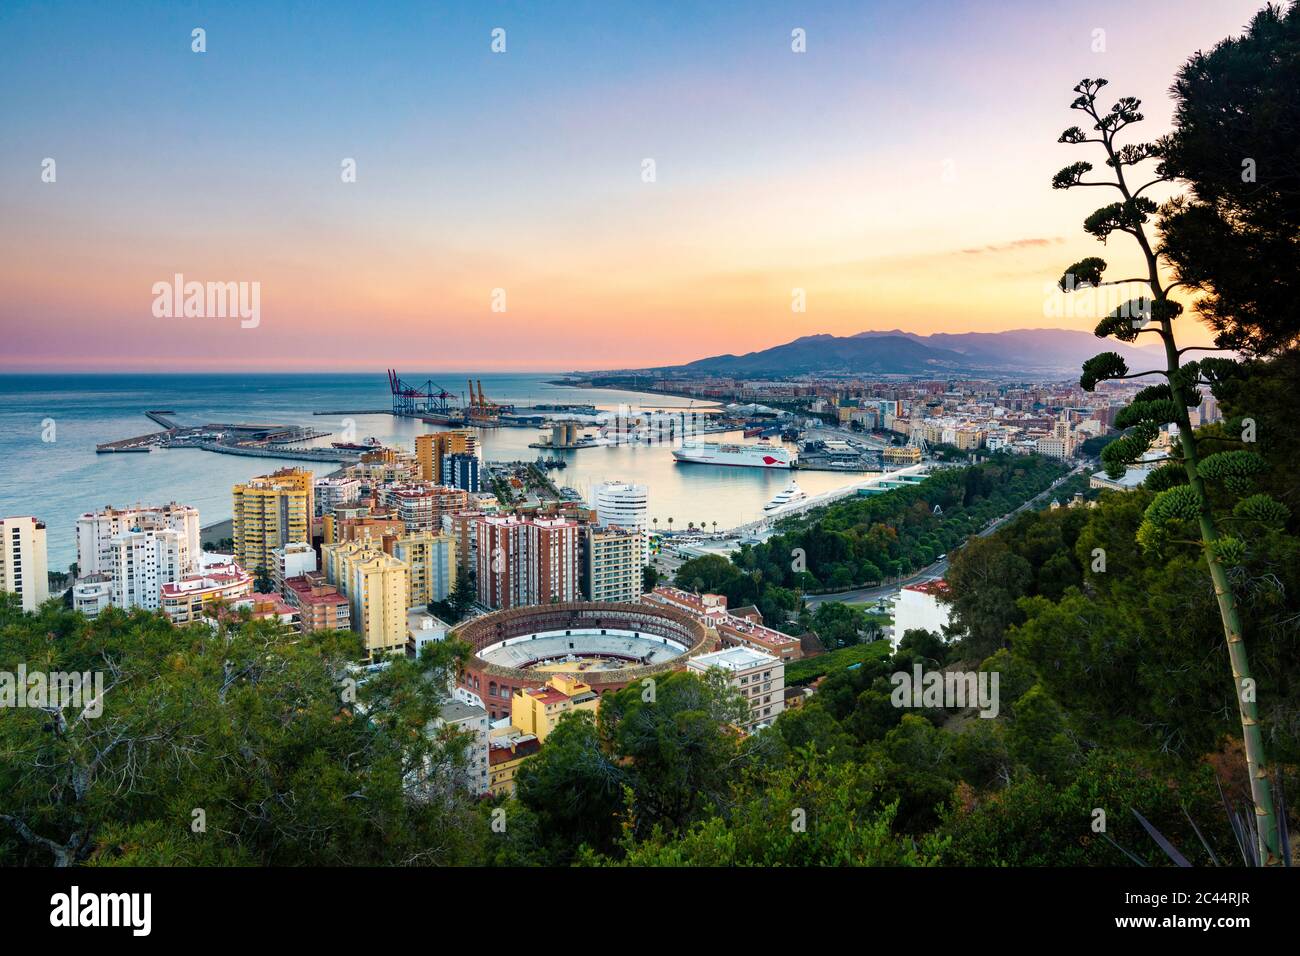 Vista desde el mirador de Gibralfaro - Málaga, España Foto de stock